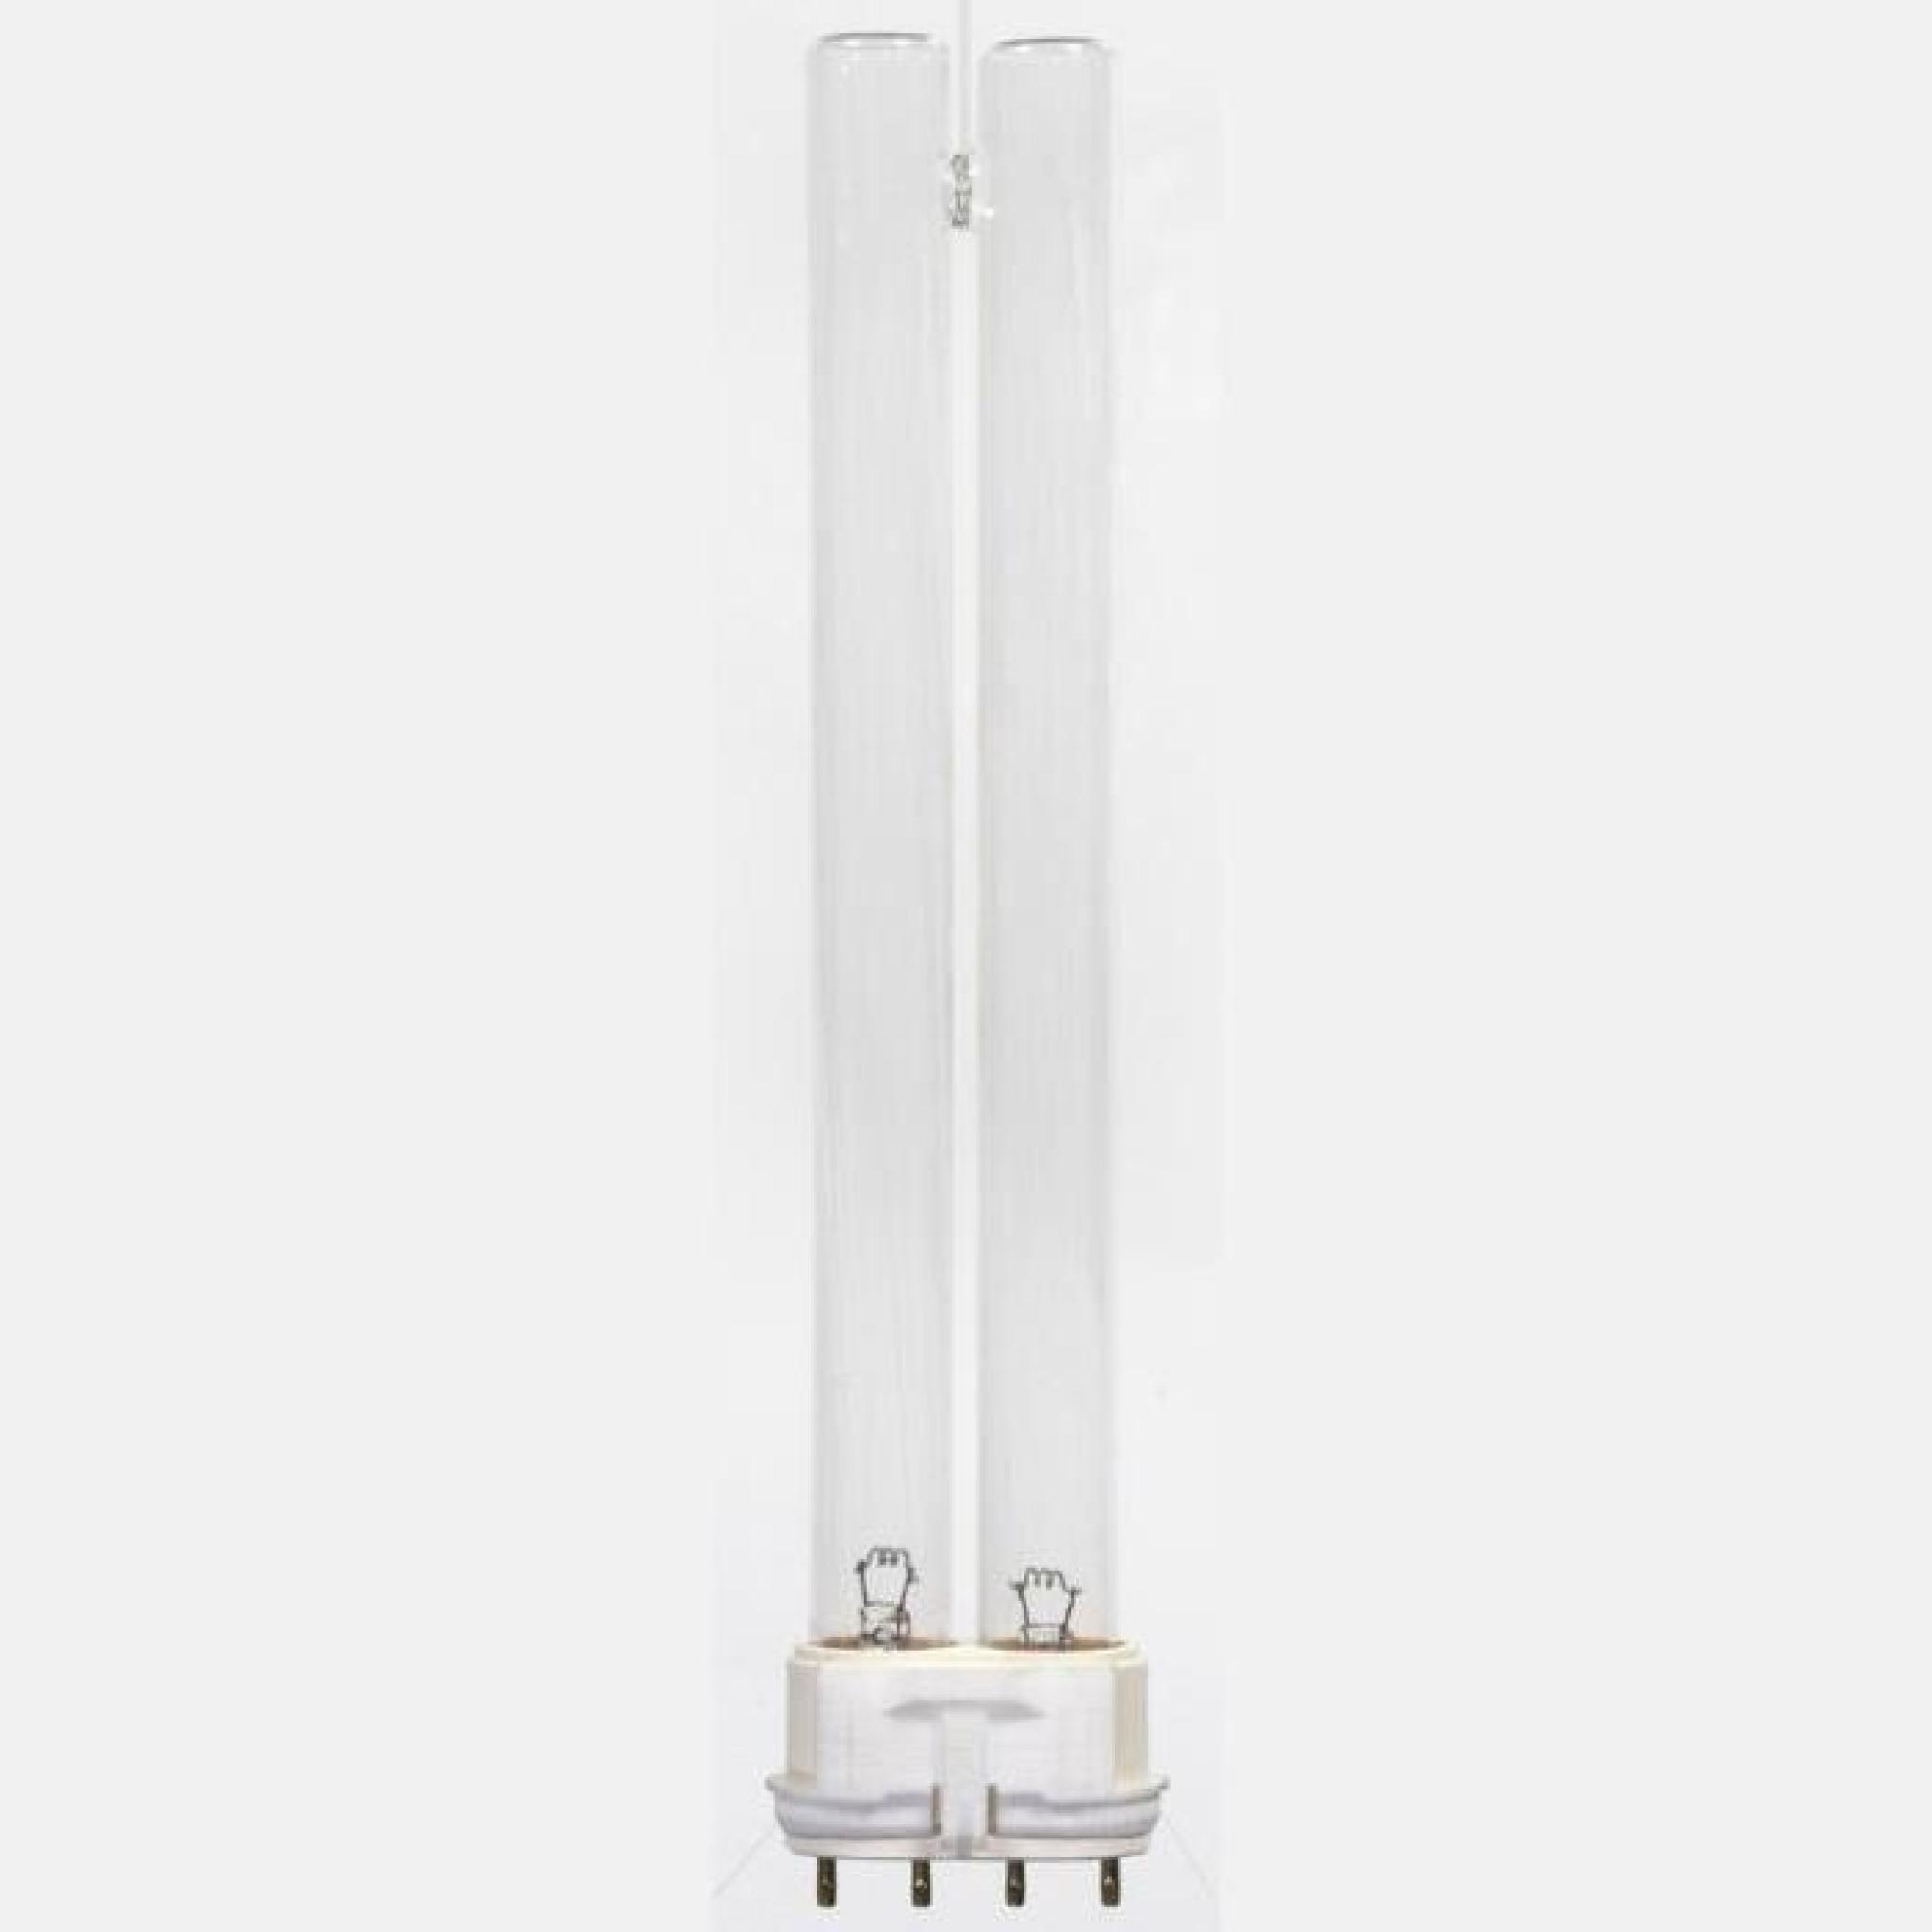 Accessoires pour fontaines et bassins Lampe PL UV-C Velda 18 W pas cher